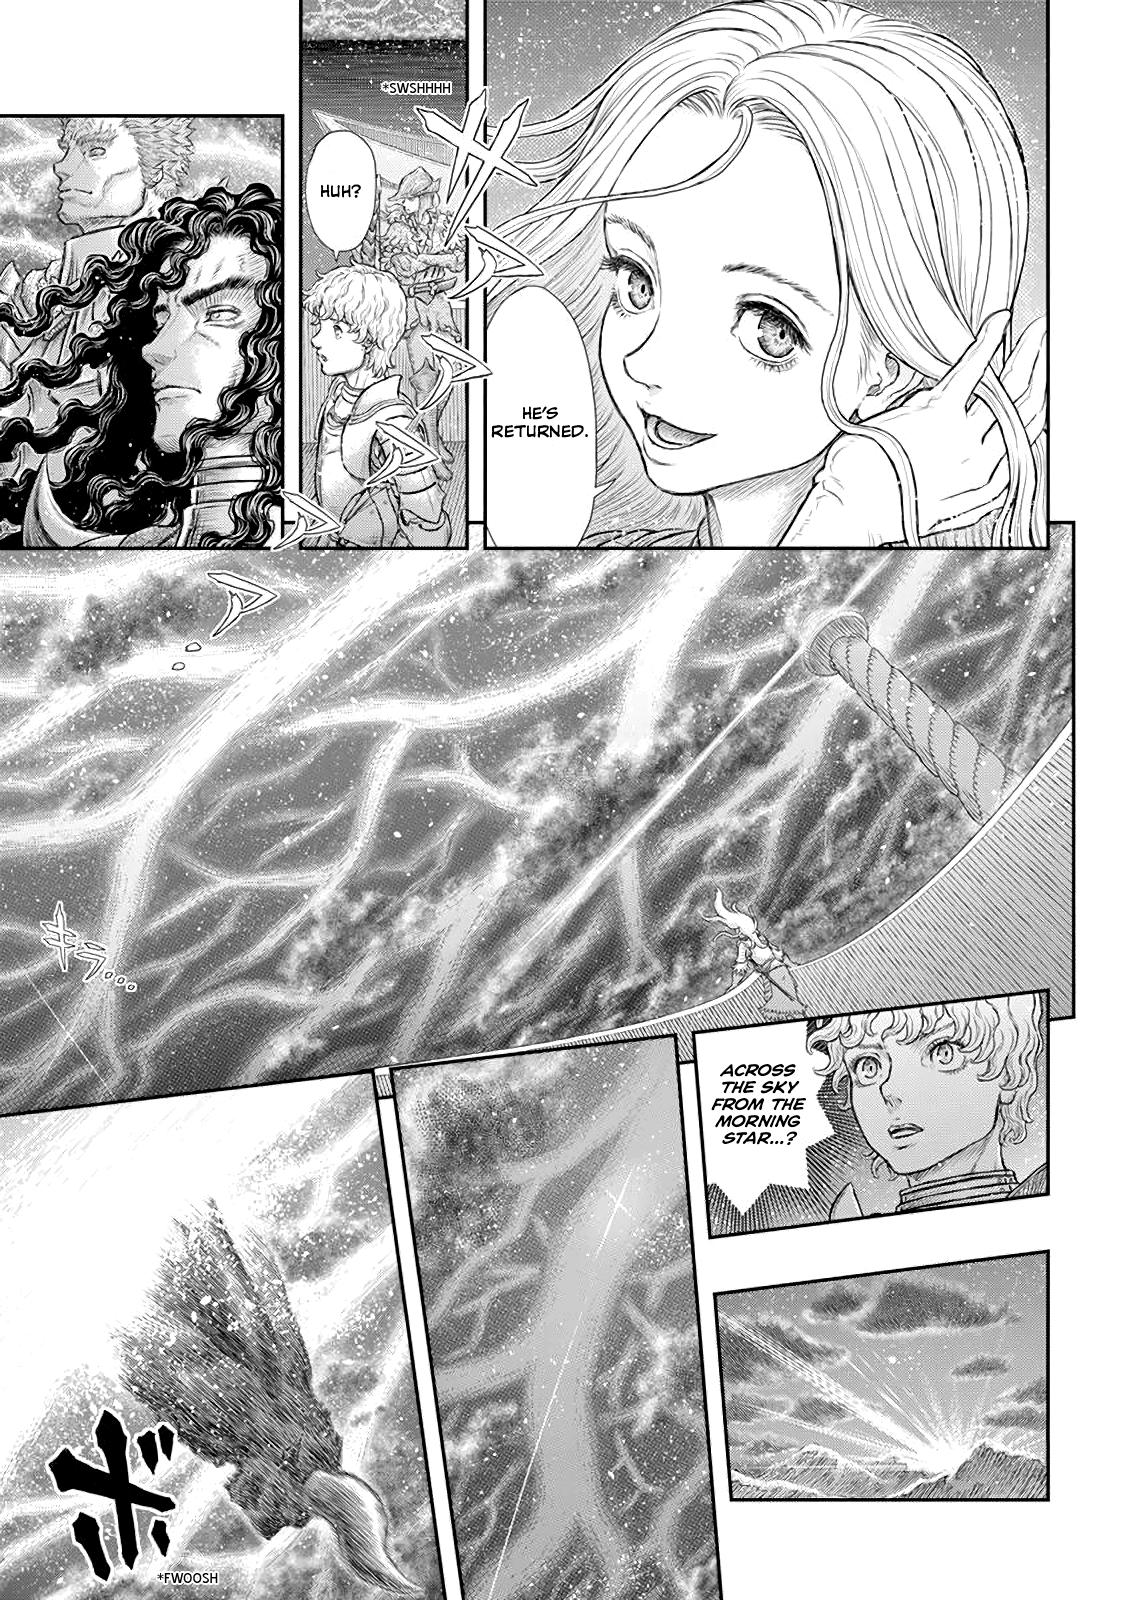 Berserk Manga Chapter 371 image 14